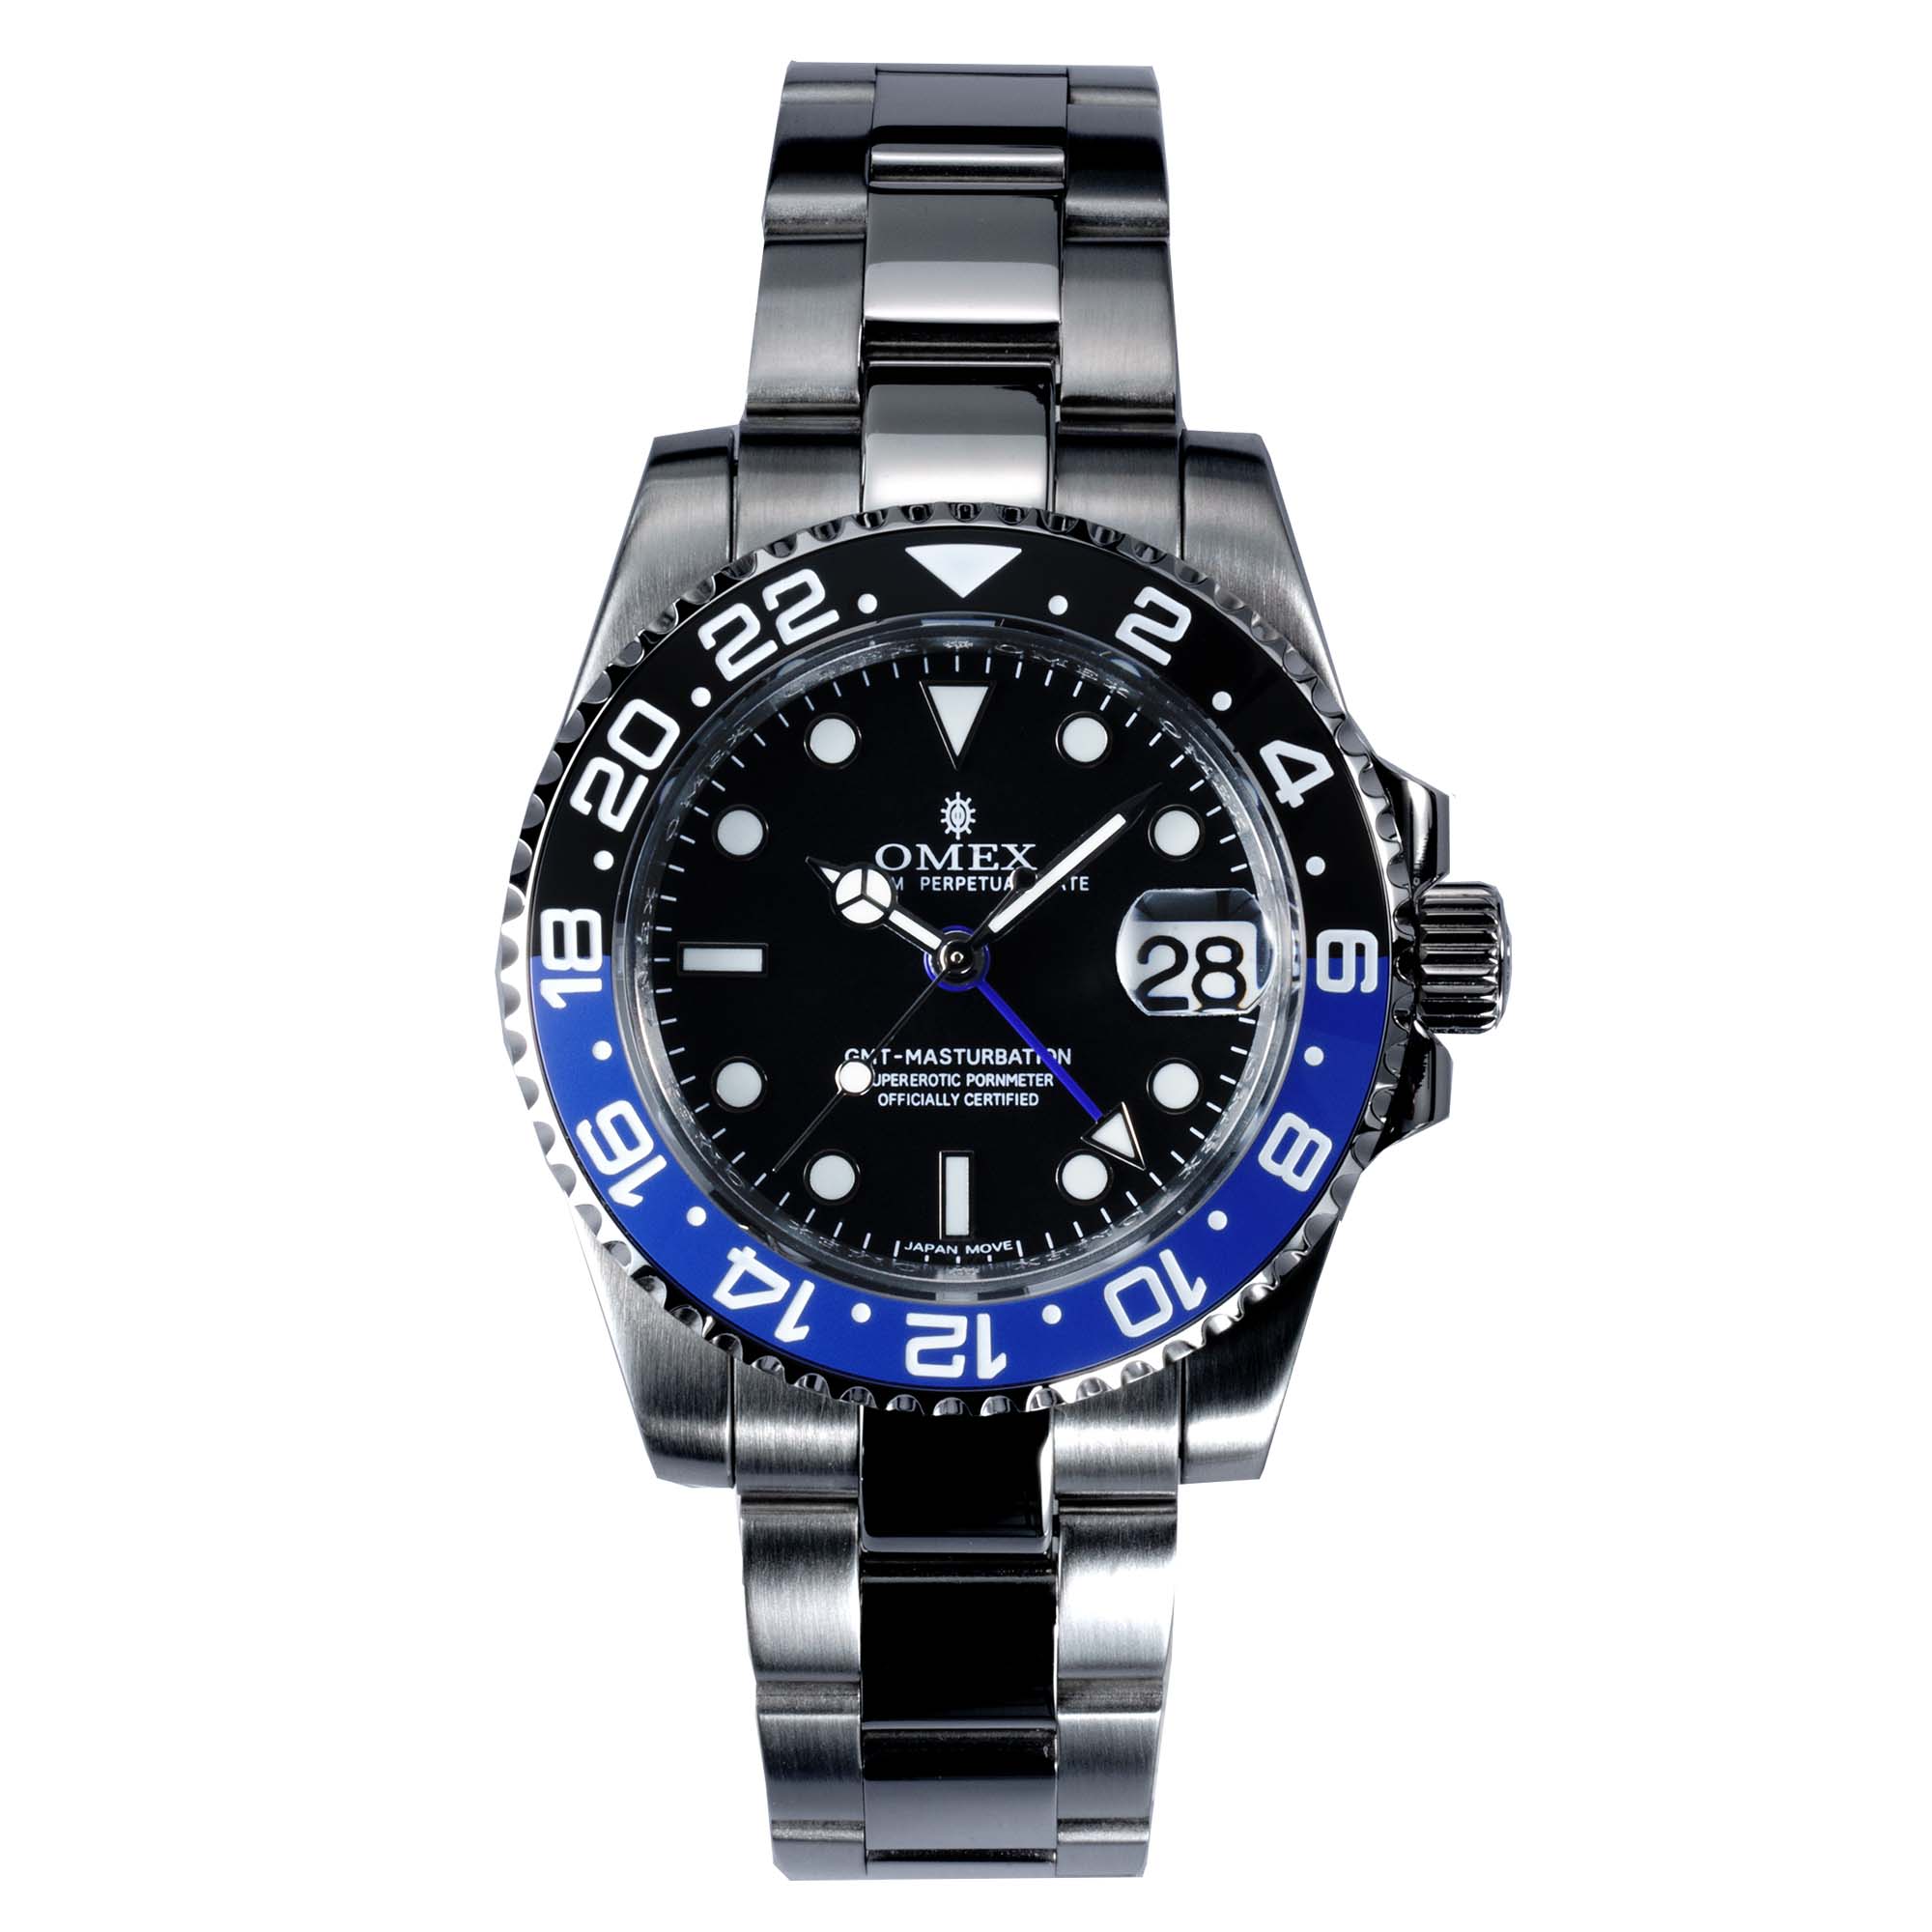 【レビュー特典付き】ジーエムティーマスターB 機械式 自動巻き SEIKO-NH34 メンズ腕時計 日常生活用強化防水 ブランド 限定腕時計  ネット通販 スーツ ビジネス